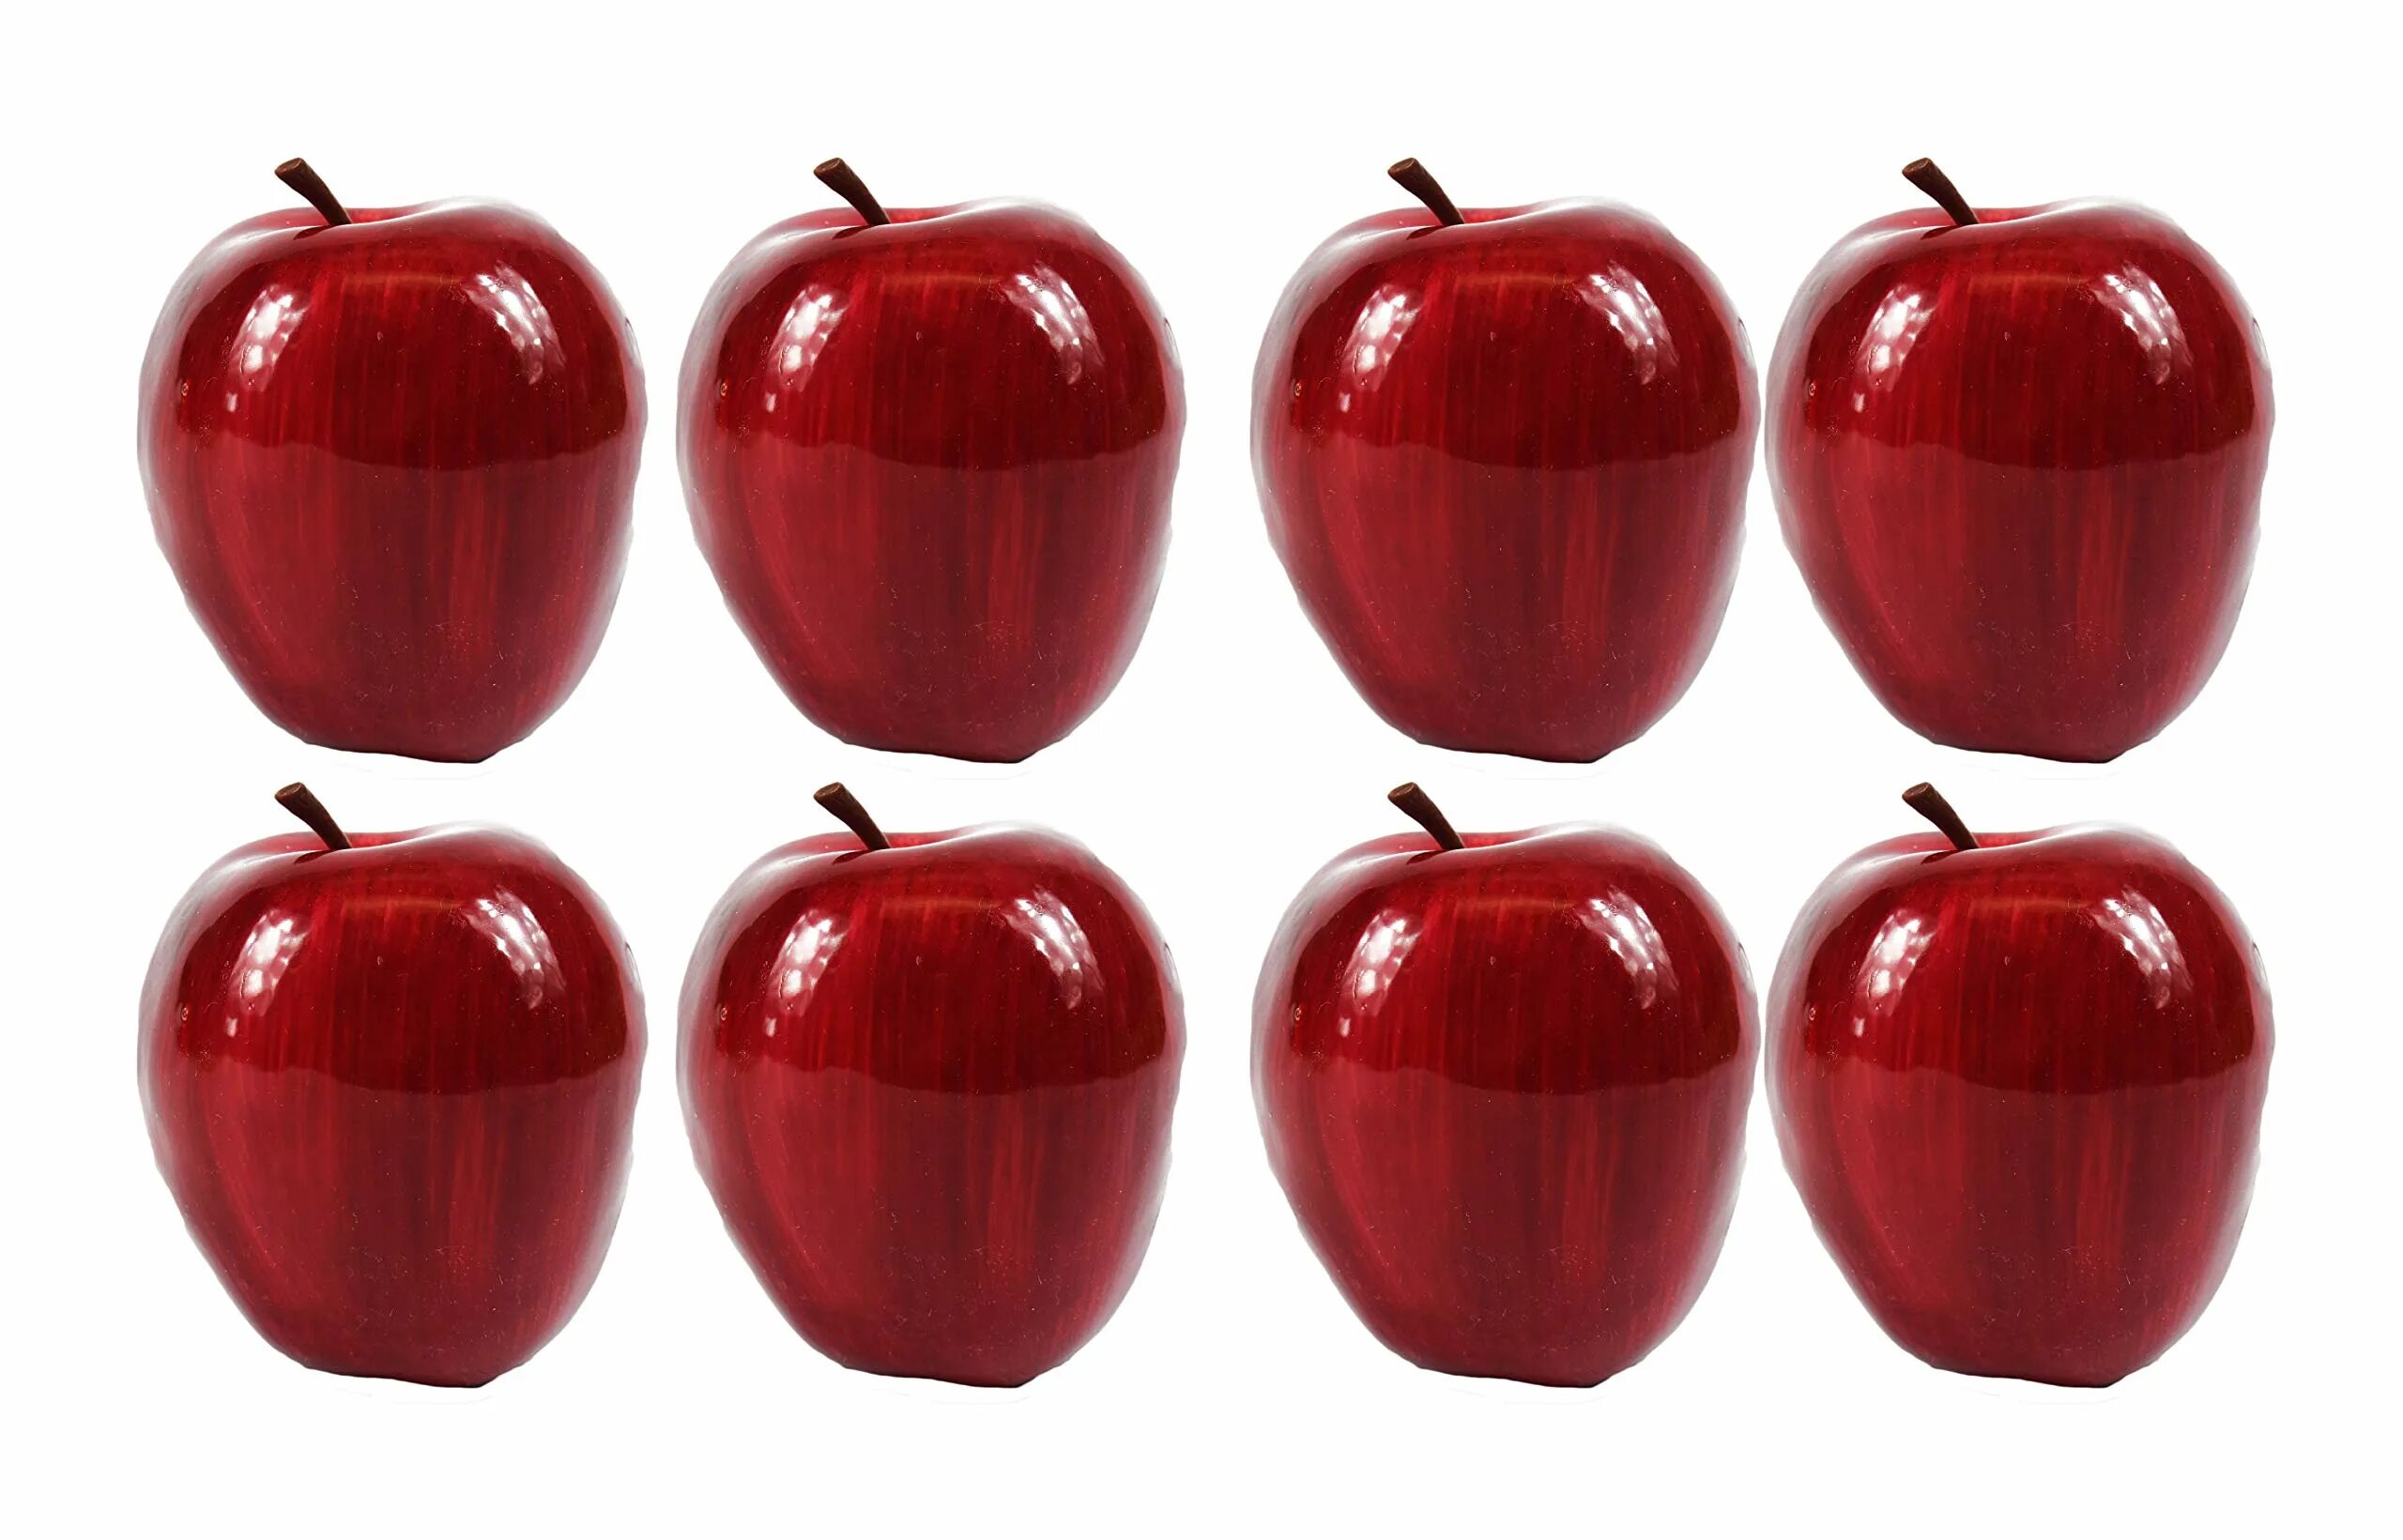 Ответ 8 яблок. 8 Яблок. Красные яблоки 3 шт. Красное яблоко без фона. Картинка 8 яблок.